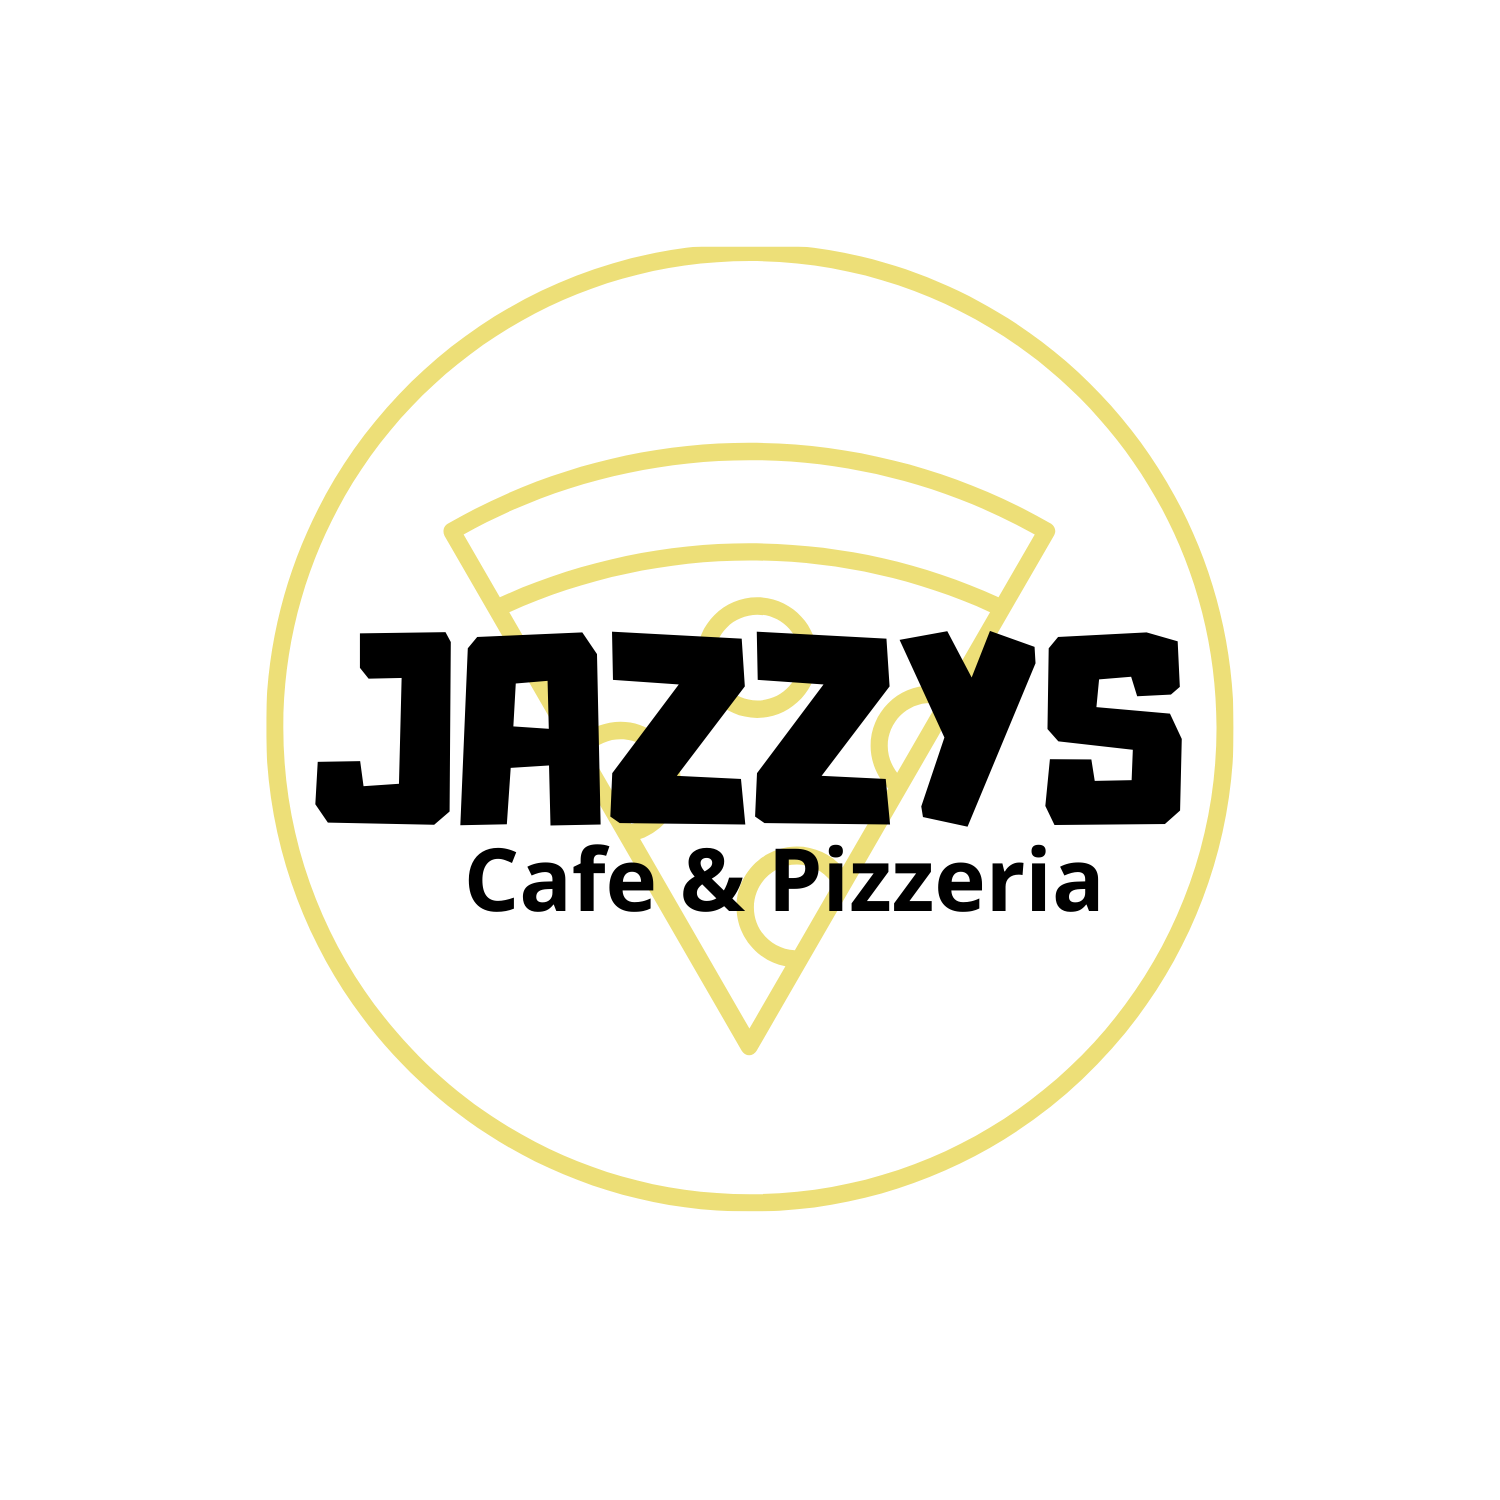 Jazzys cafe & pizzeria Logo